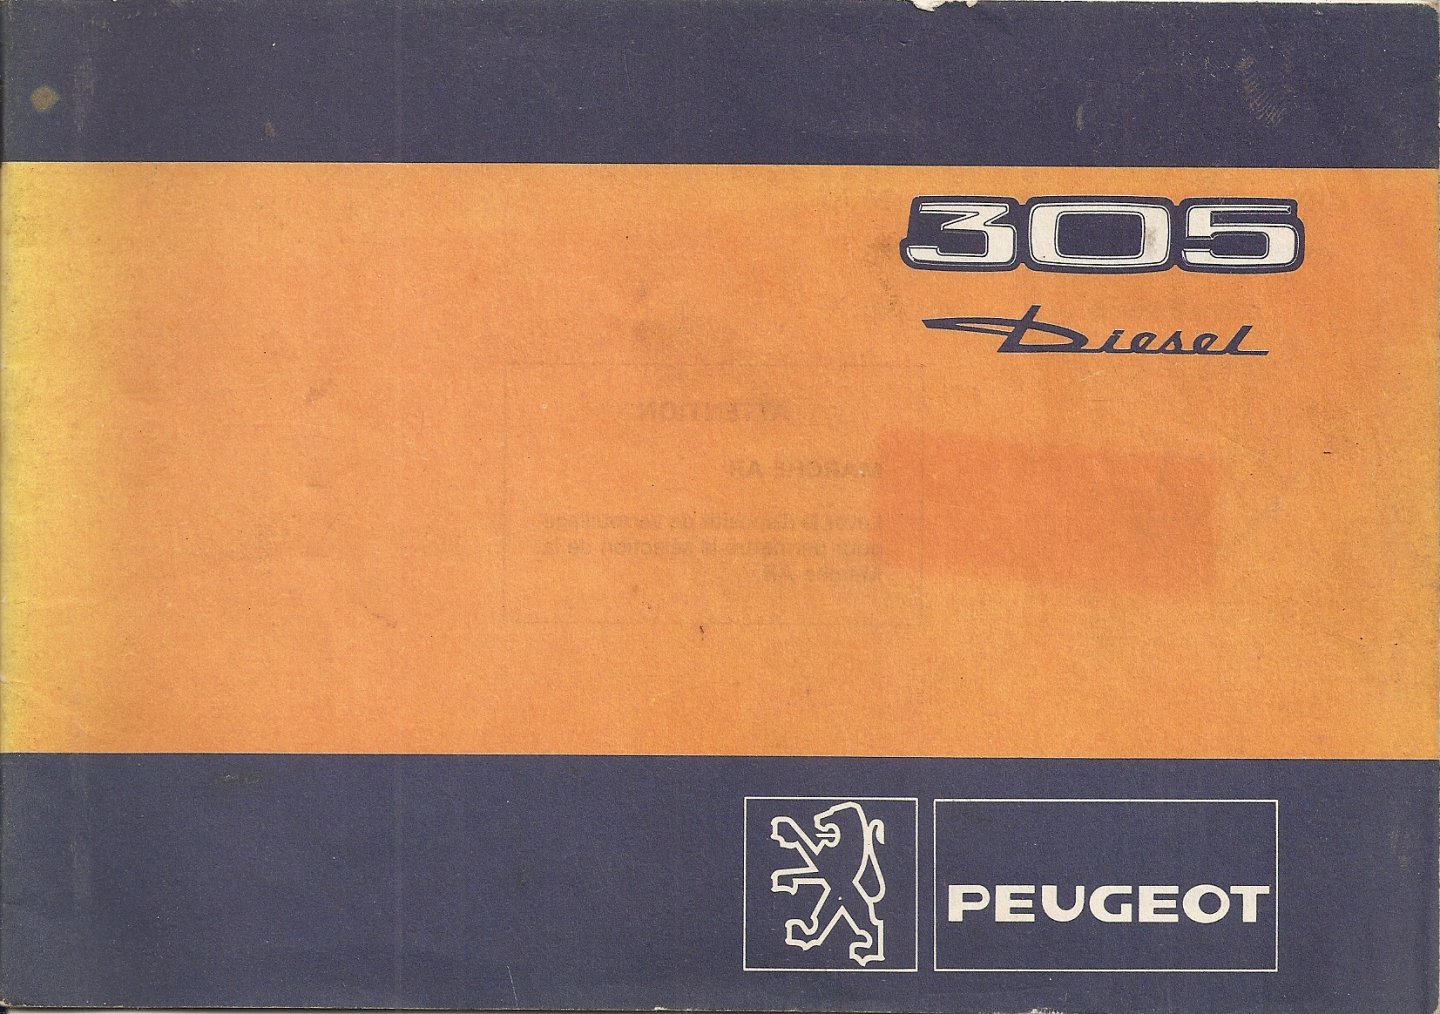 NN - Peugeot 305 Diesel.